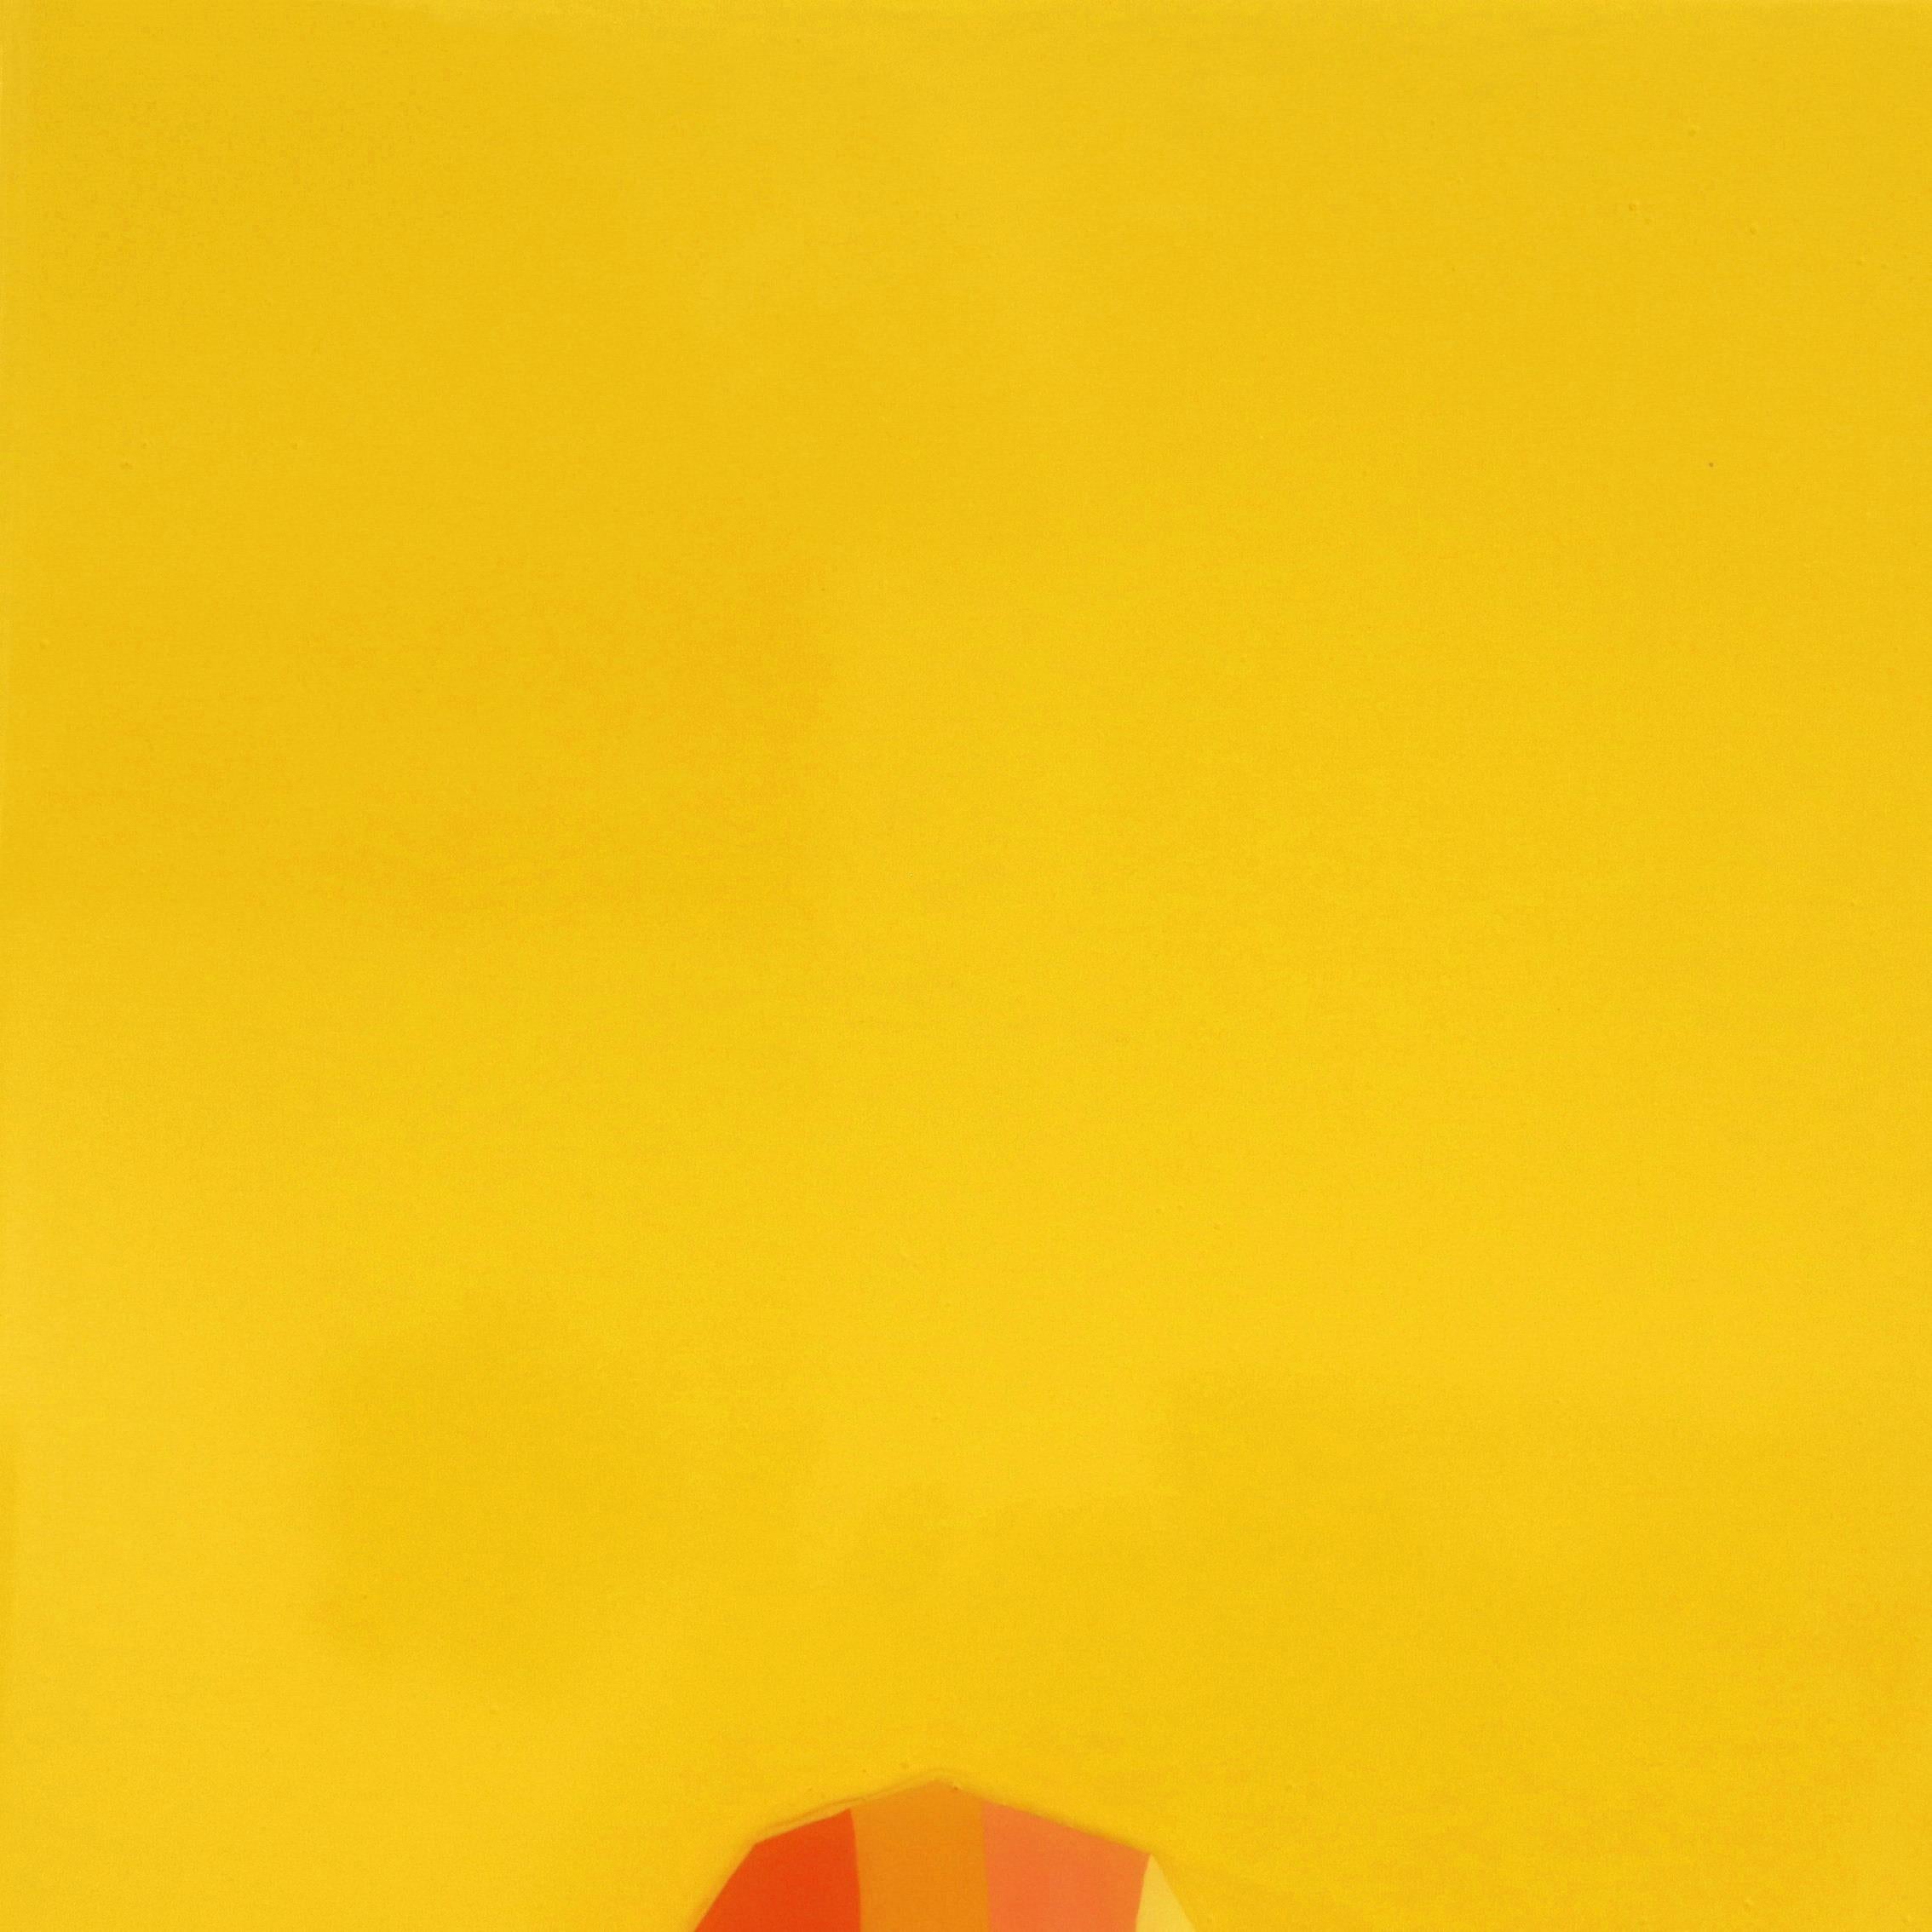 Lellow - Vibrant Gelb Orange Südwesten inspiriert Pop Art Kaktus Malerei (Minimalistisch), Painting, von Will Beger